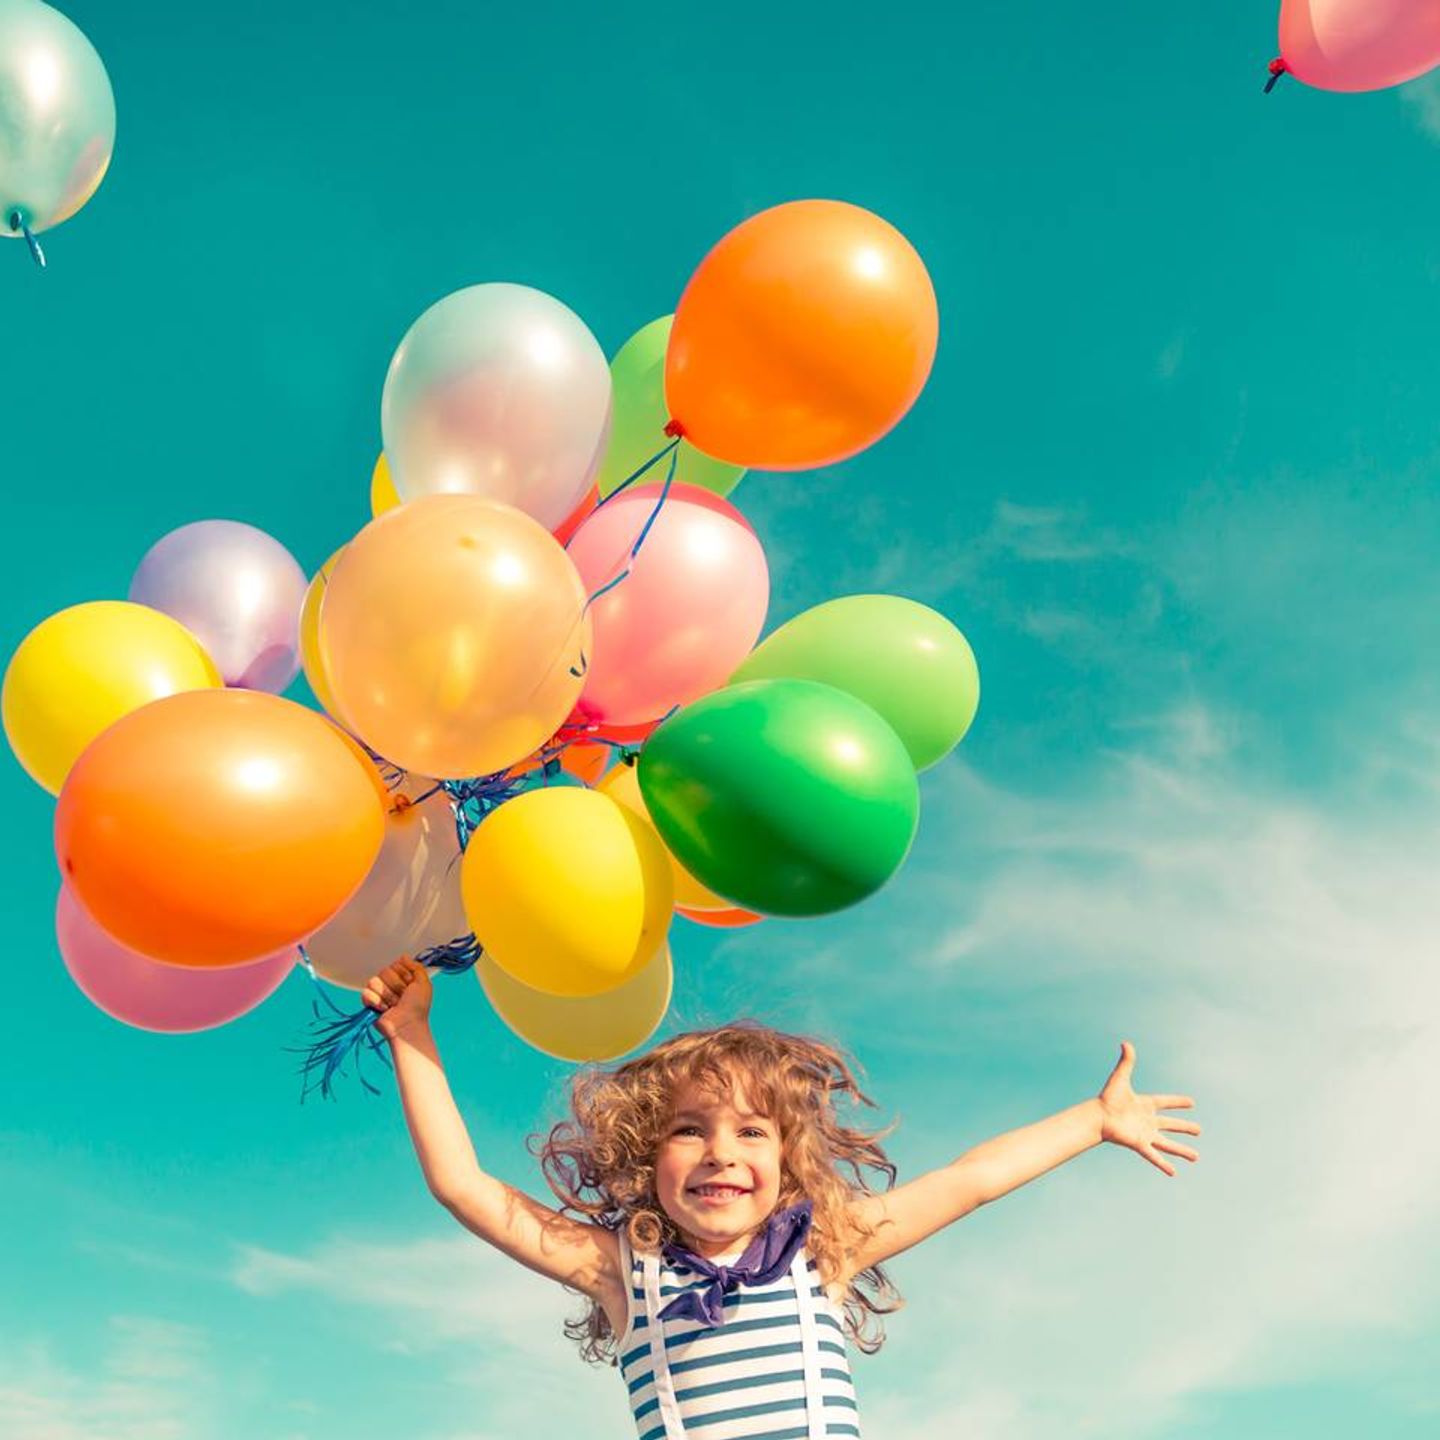 Bilde av barn med ballonger